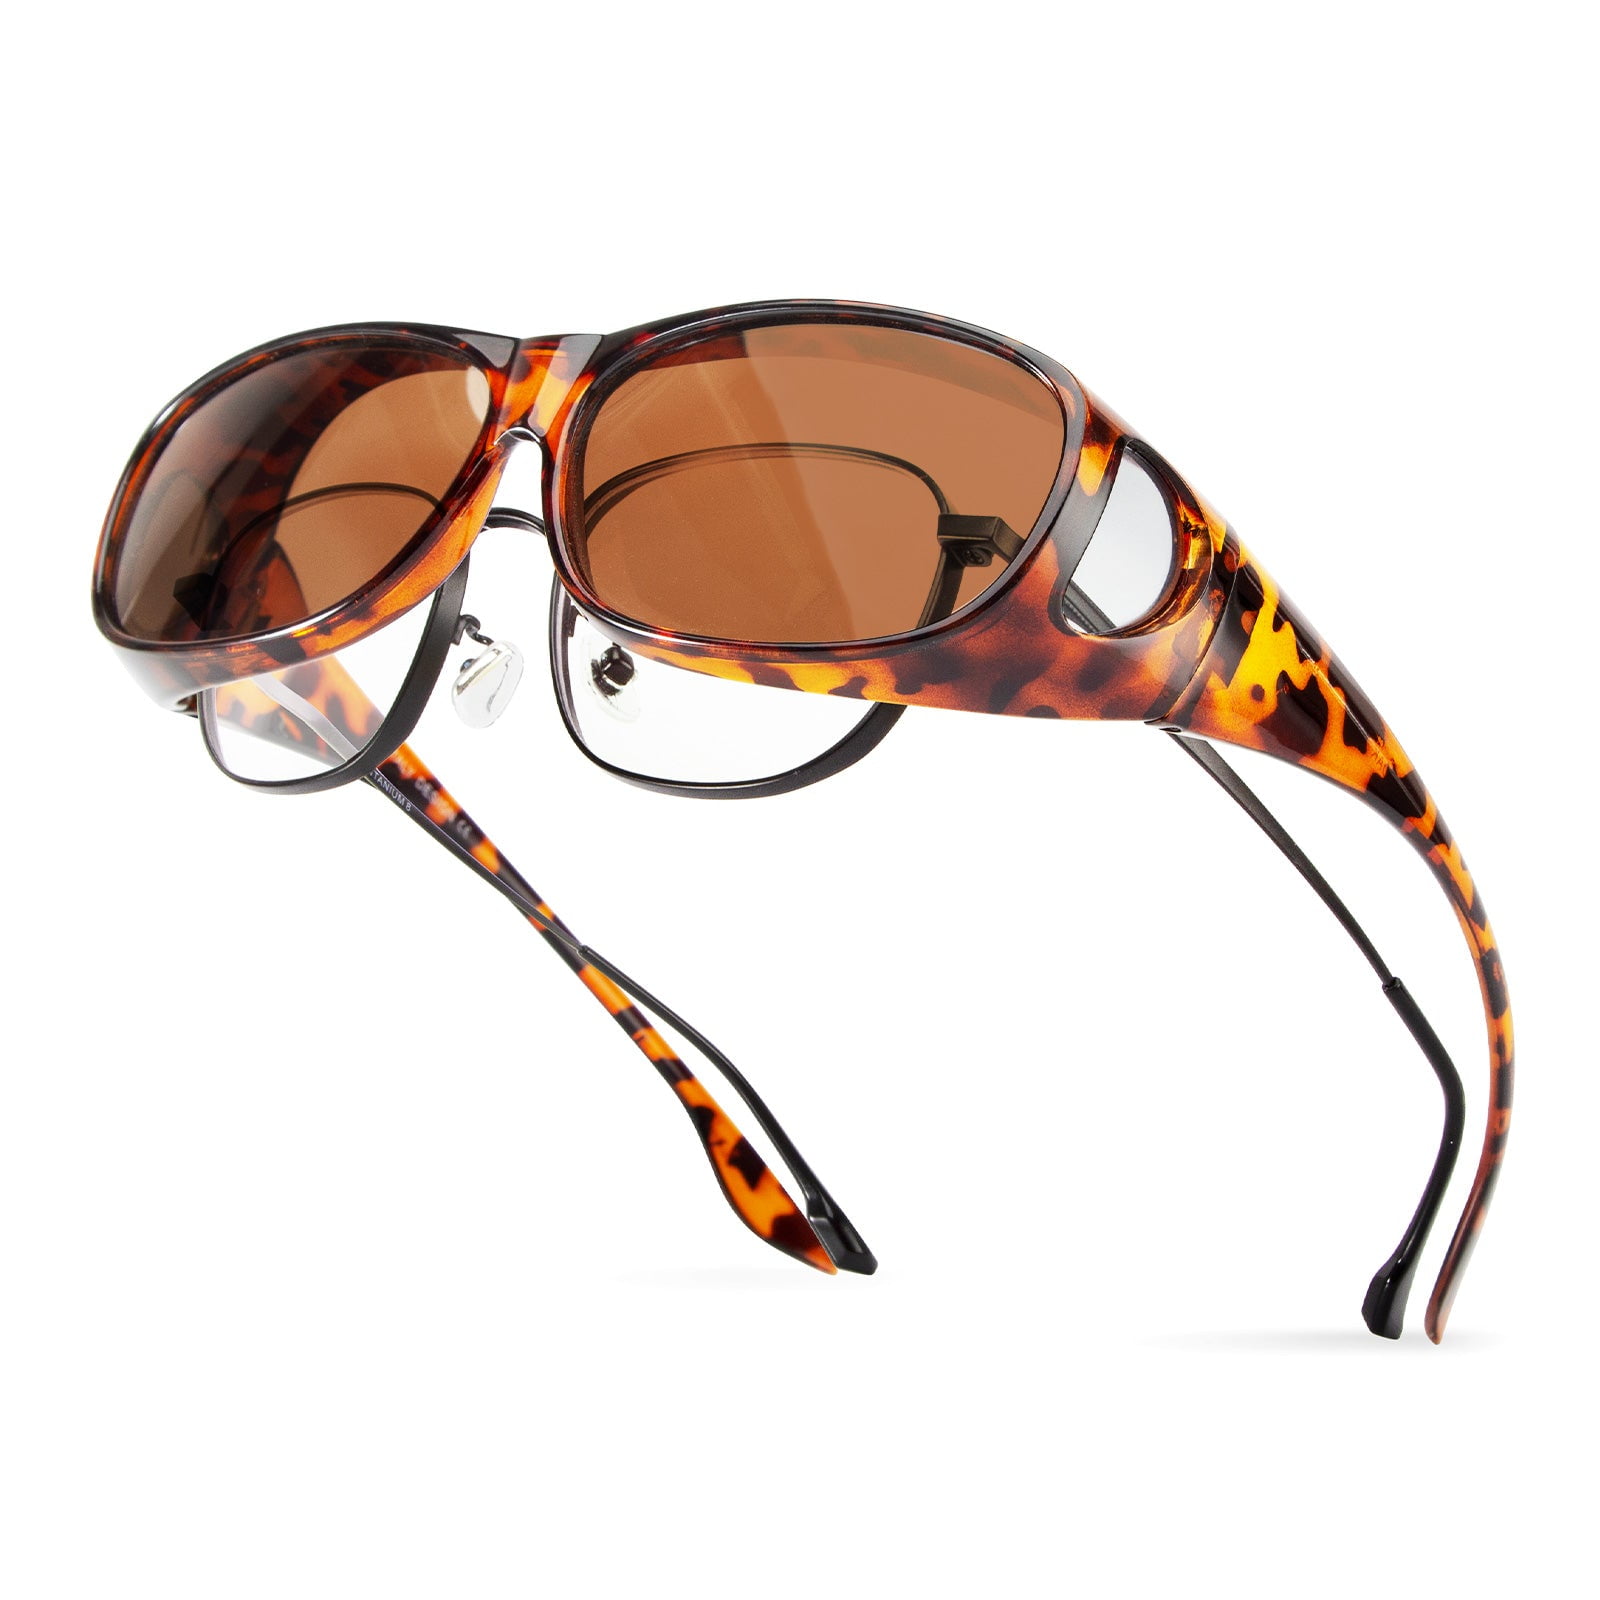 Polarized Sunglasses Fit-Over Cover Over Myopia Prescription